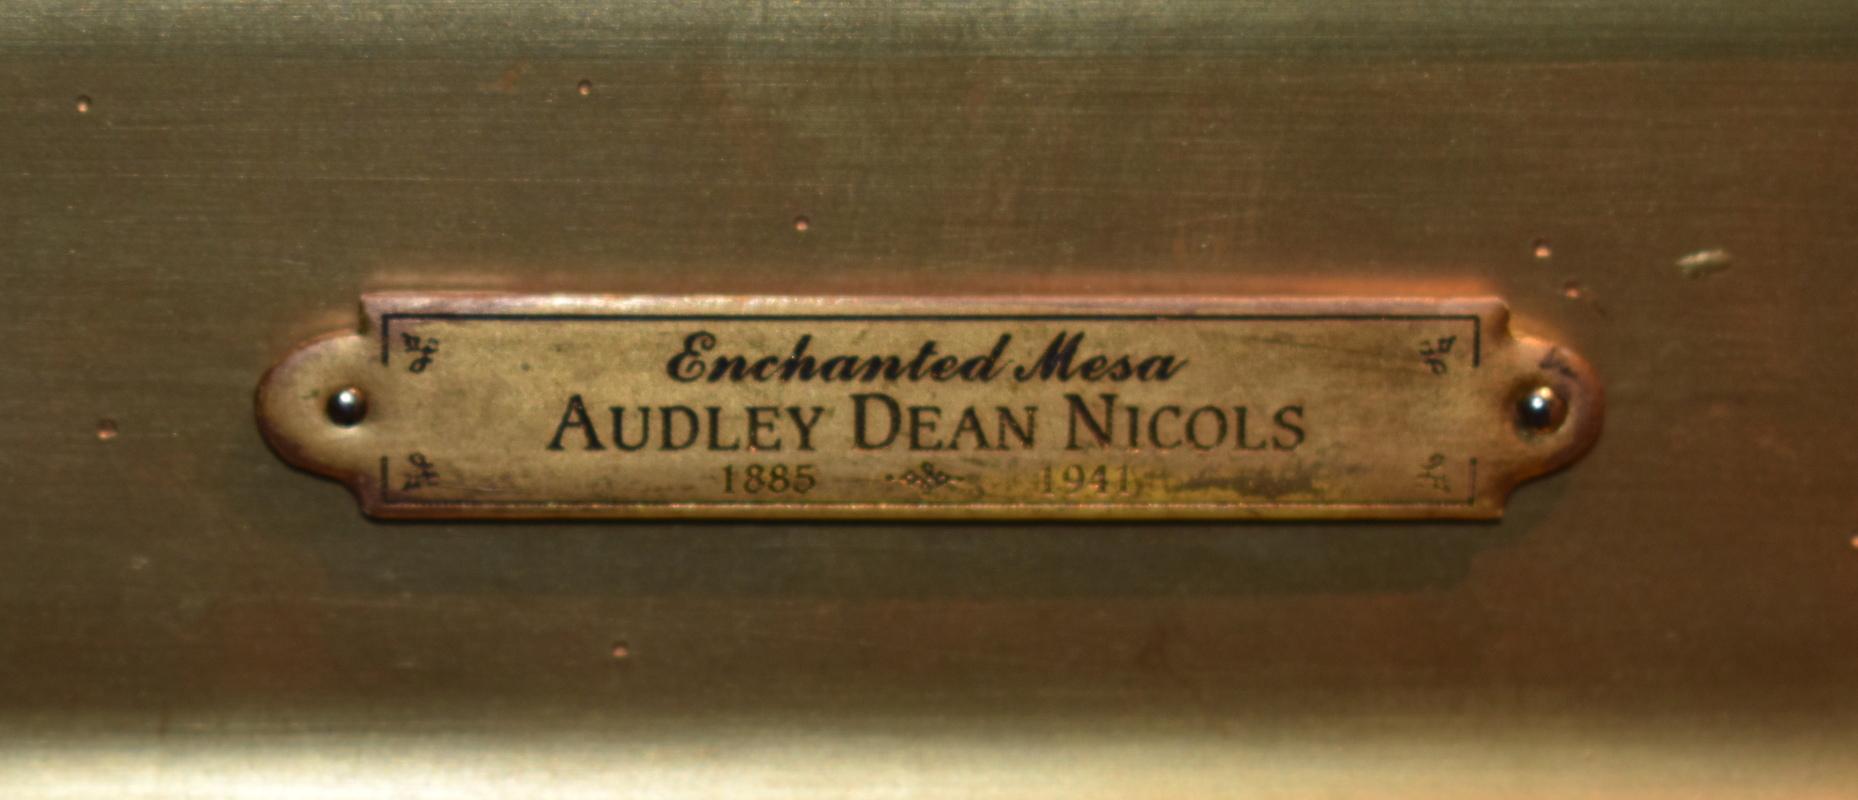 audley dean nicols